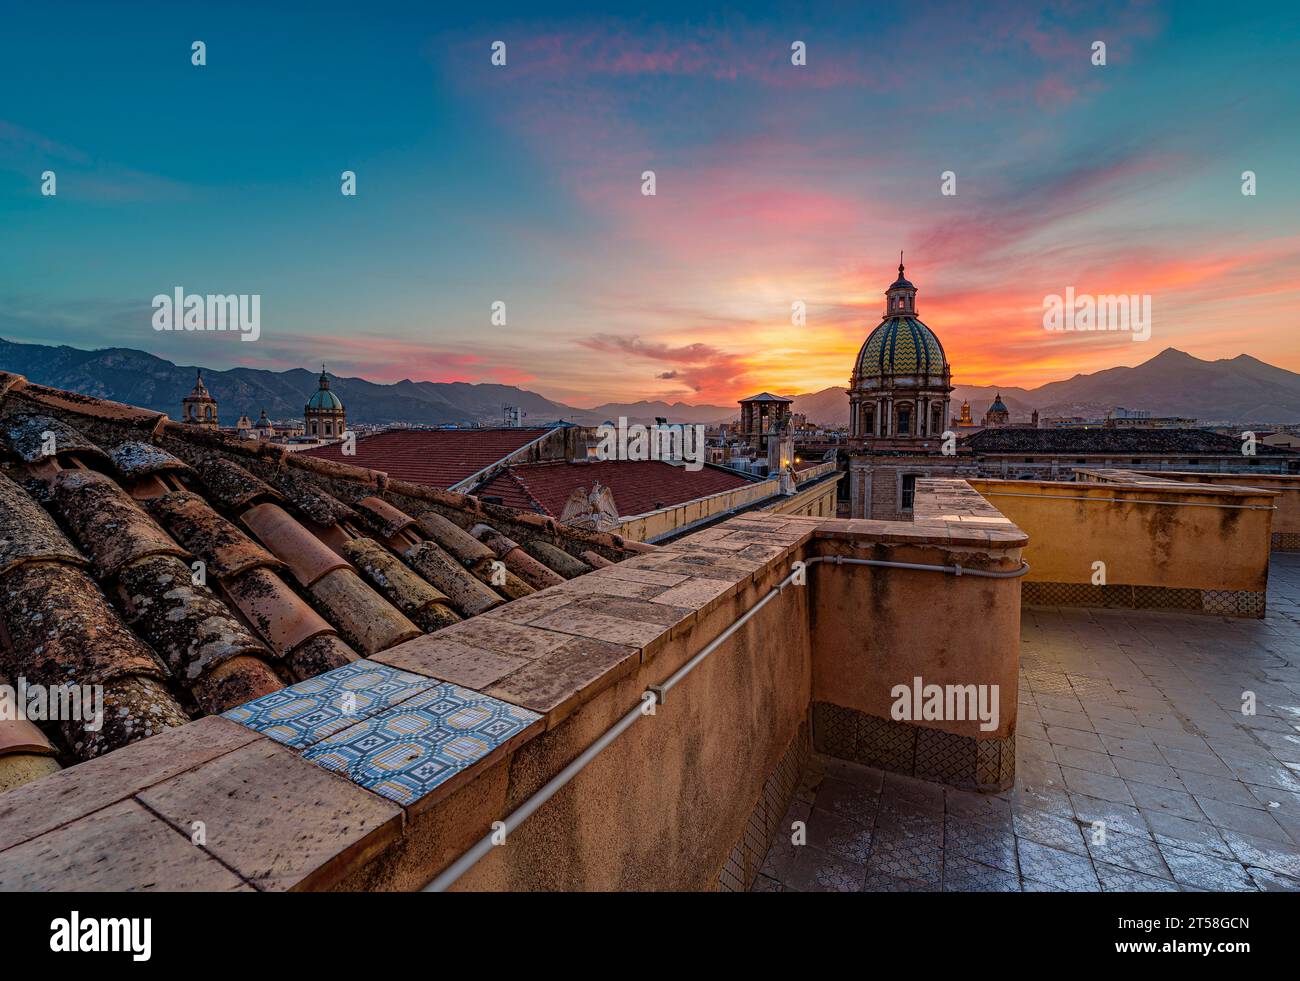 La ville de Palerme vue des toits au crépuscule, Sicile Banque D'Images